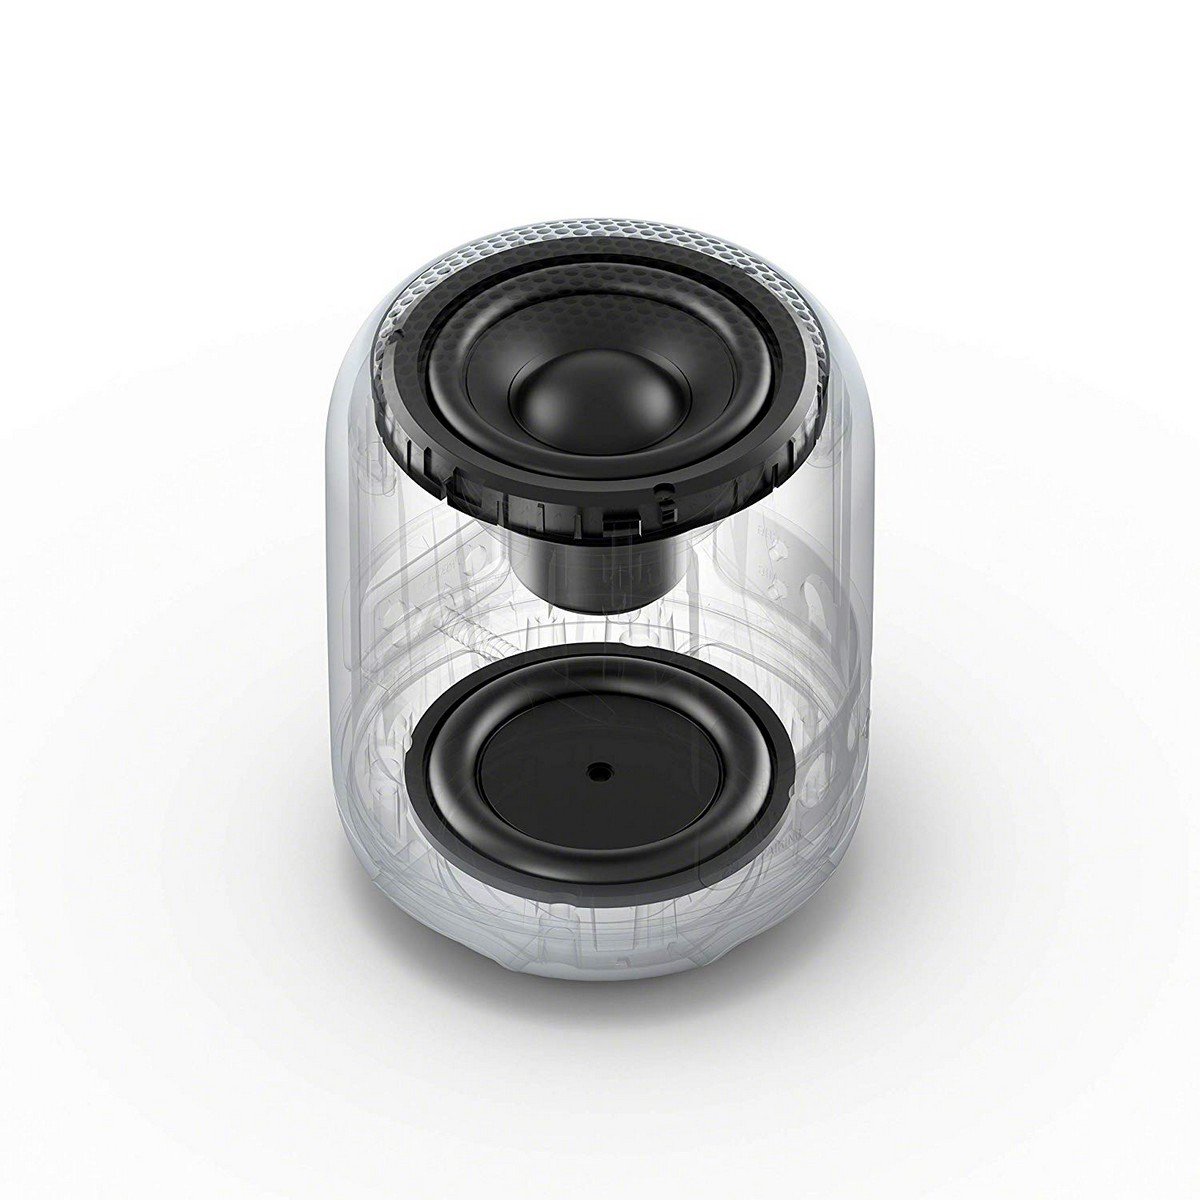 Głośnik bluetooth SONY SRSXB12 czarny. Ożyw muzykę taneczną dzięki technologii EXTRA BASS™.